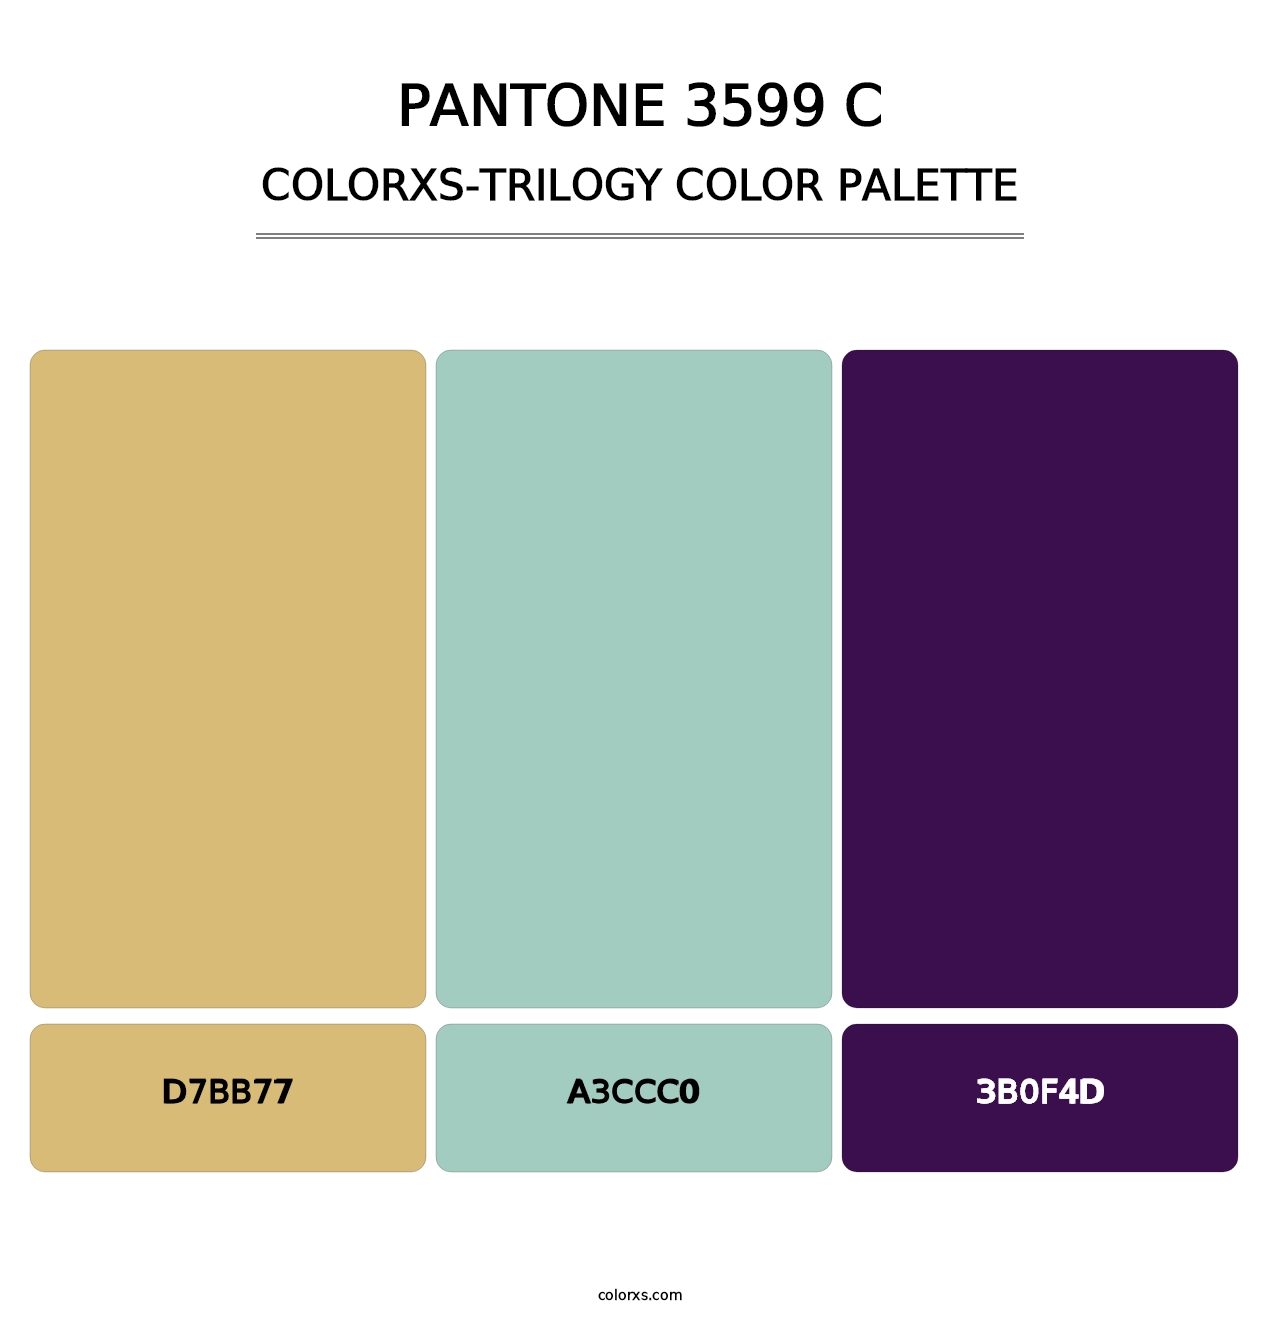 PANTONE 3599 C - Colorxs Trilogy Palette